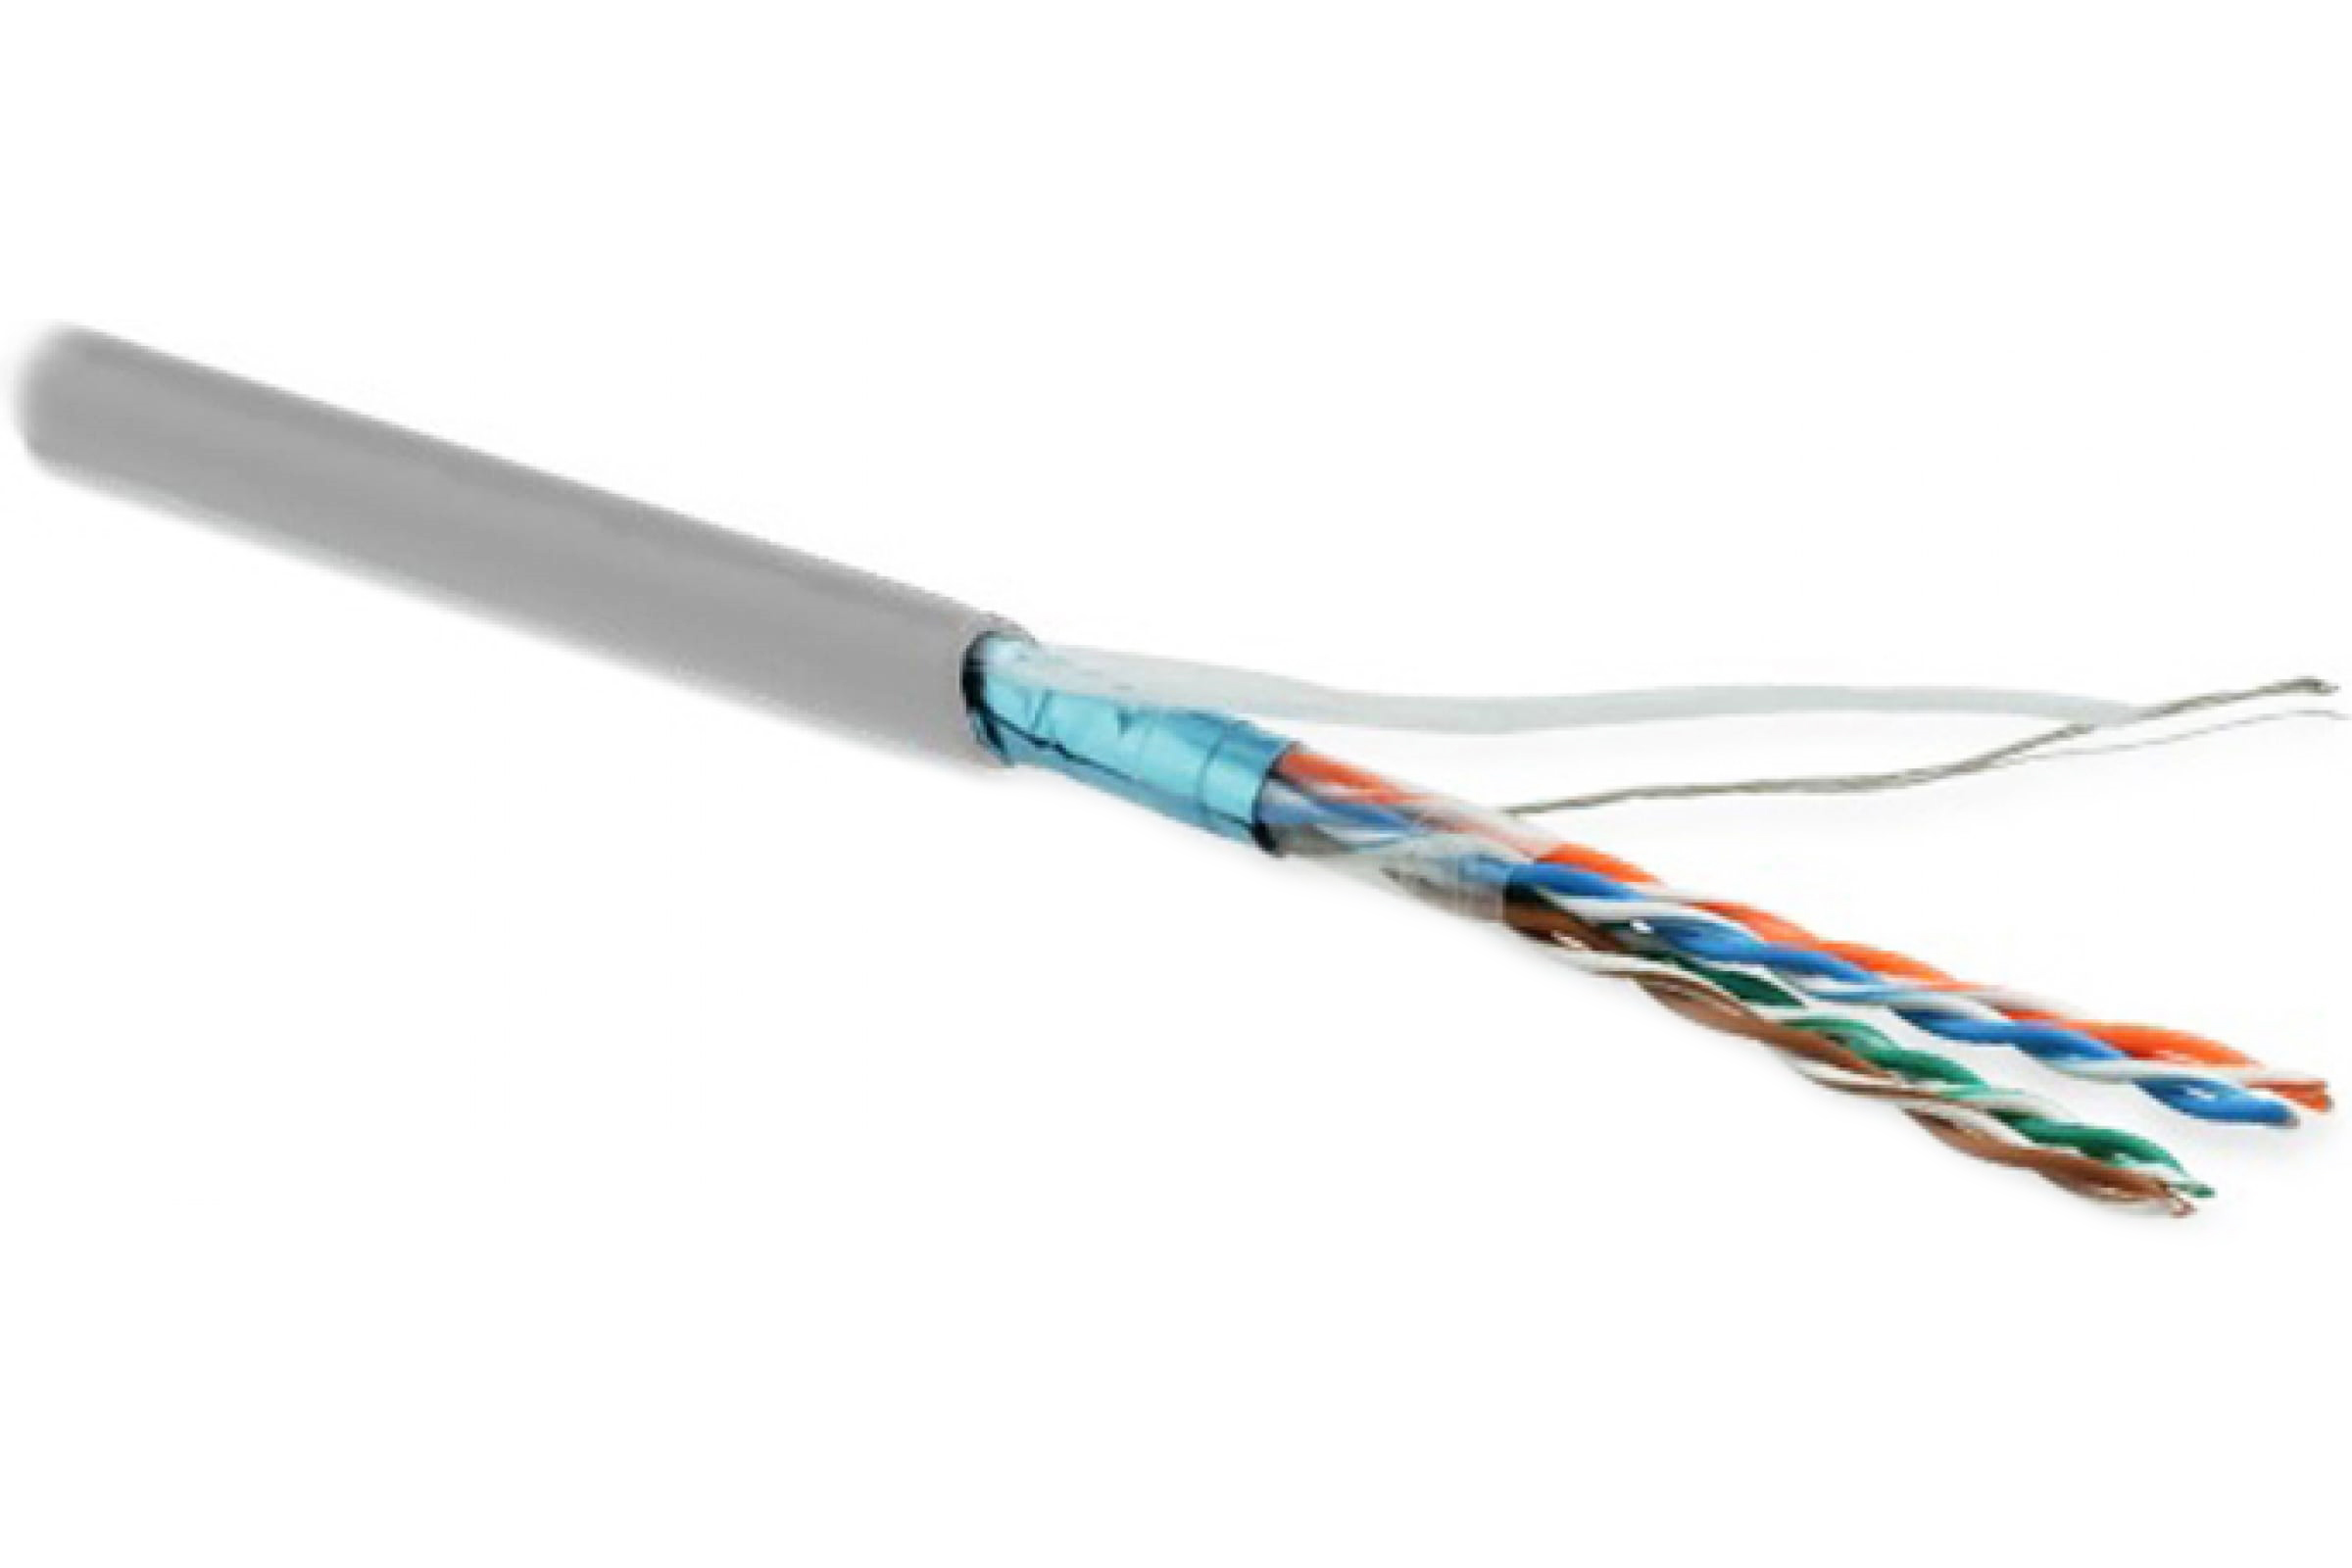 Кабель Hyperline кабель сетевой без разъемов 100м (243623) кабель hyperline кабель сетевой без разъемов 100м 243623